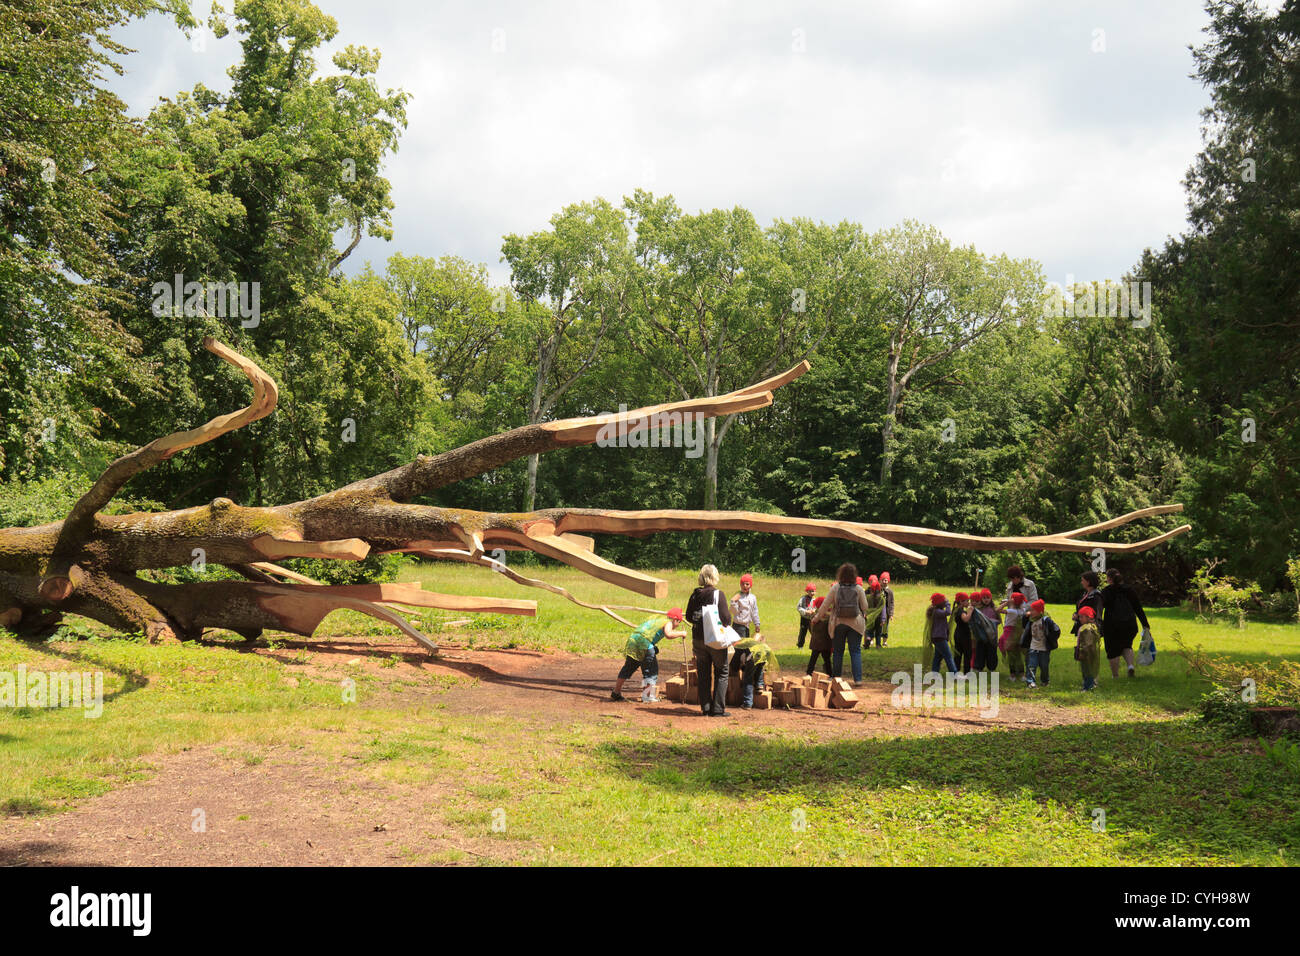 La France, de l'Arboretum des barres ou Arbofolia, Le chêne hongrois au sol et sculpté par William Costel avec enfants Banque D'Images